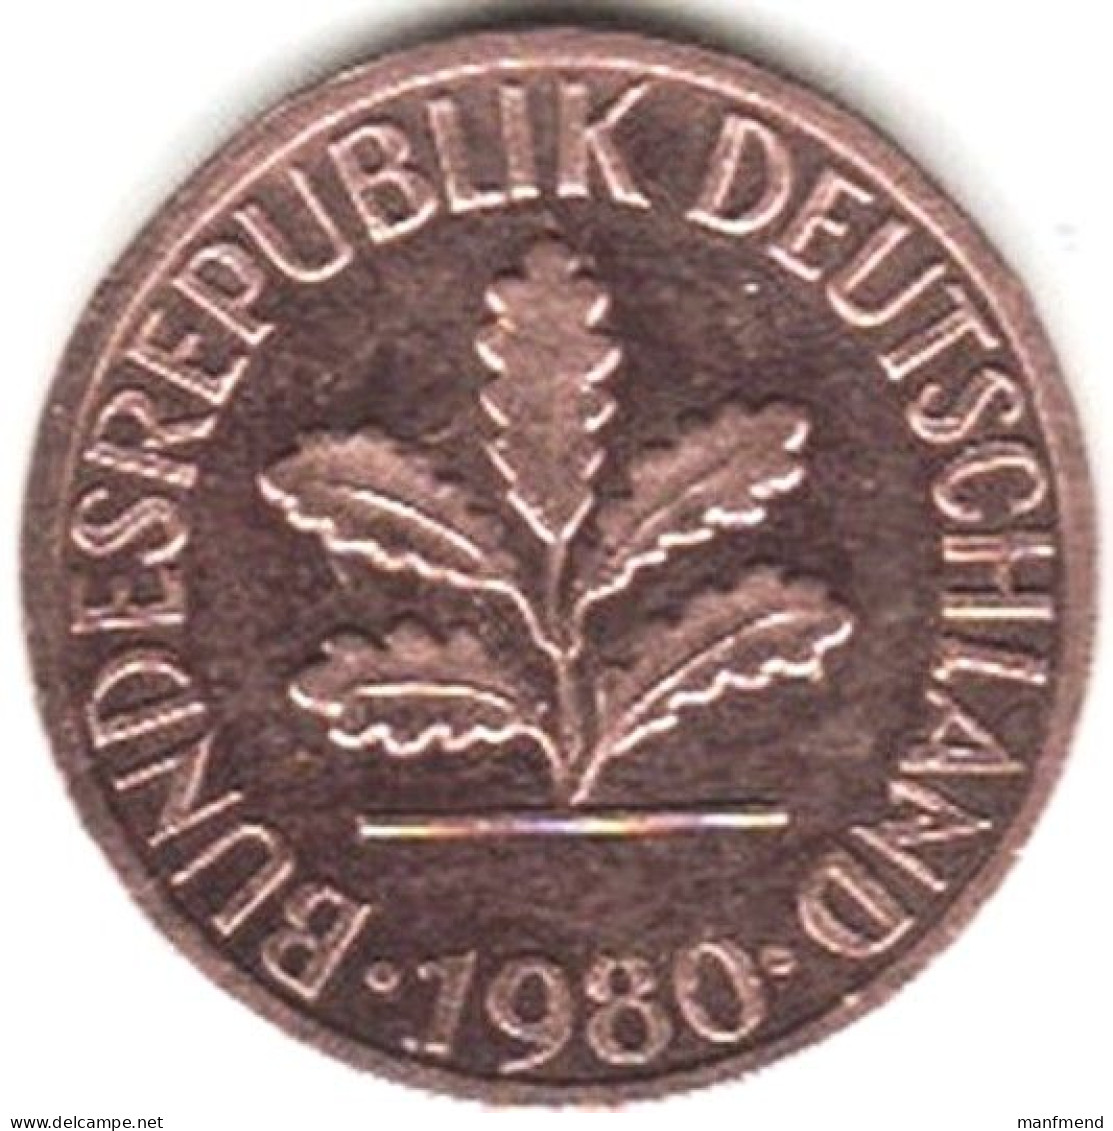 Germany - 1980 - KM 105 - 1 Pfennig - Mintmark "J" / Hamburg - XF - Look Scans - 1 Pfennig